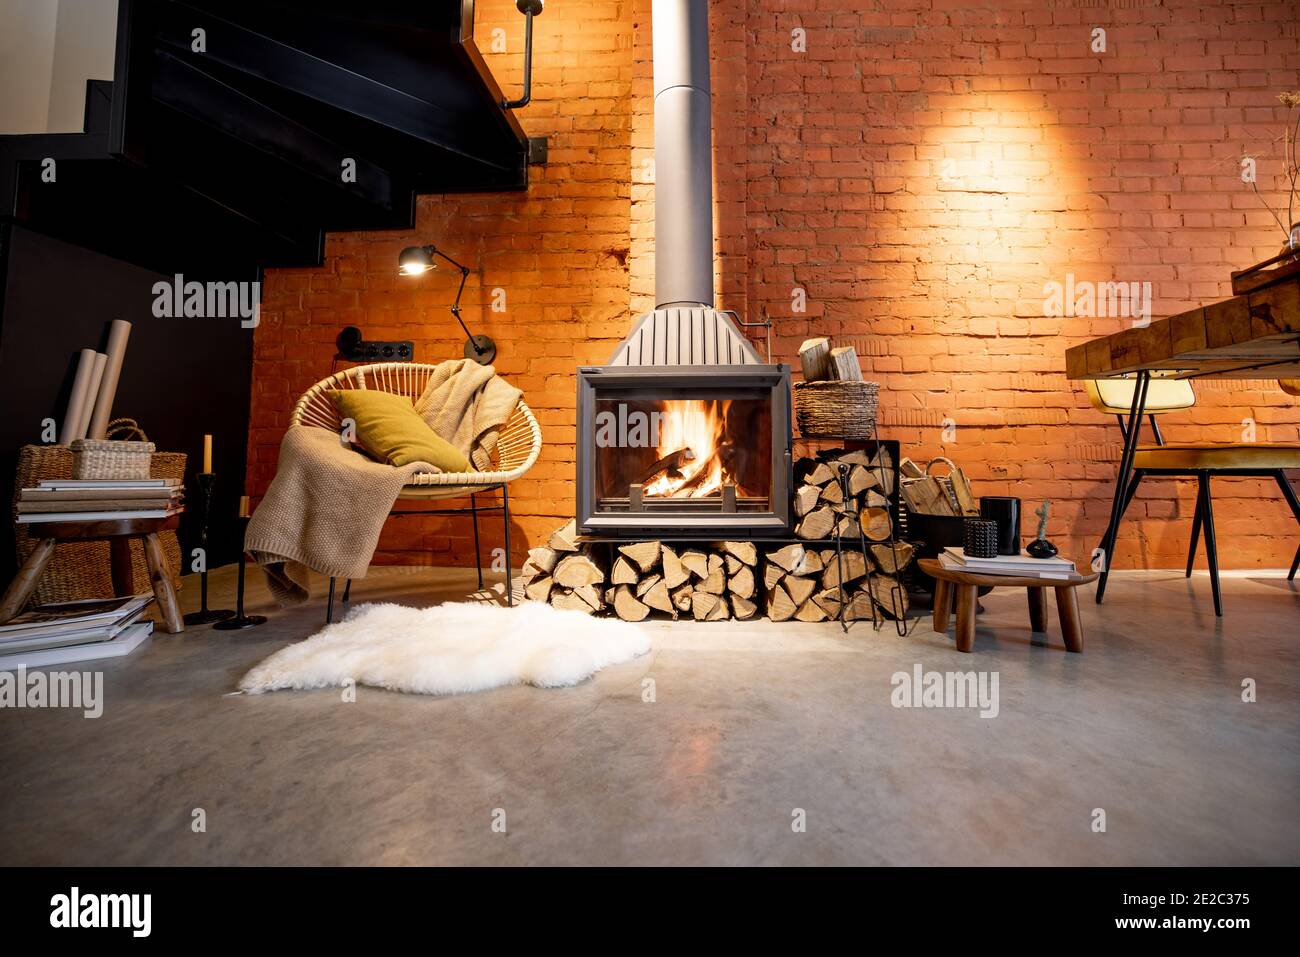 Cheminée confortable avec bois de chauffage dans la maison de style loft  avec arrière-plan de mur de briques, feu de cheminée dans la cheminée,  agrément de la maison en hiver Photo Stock -